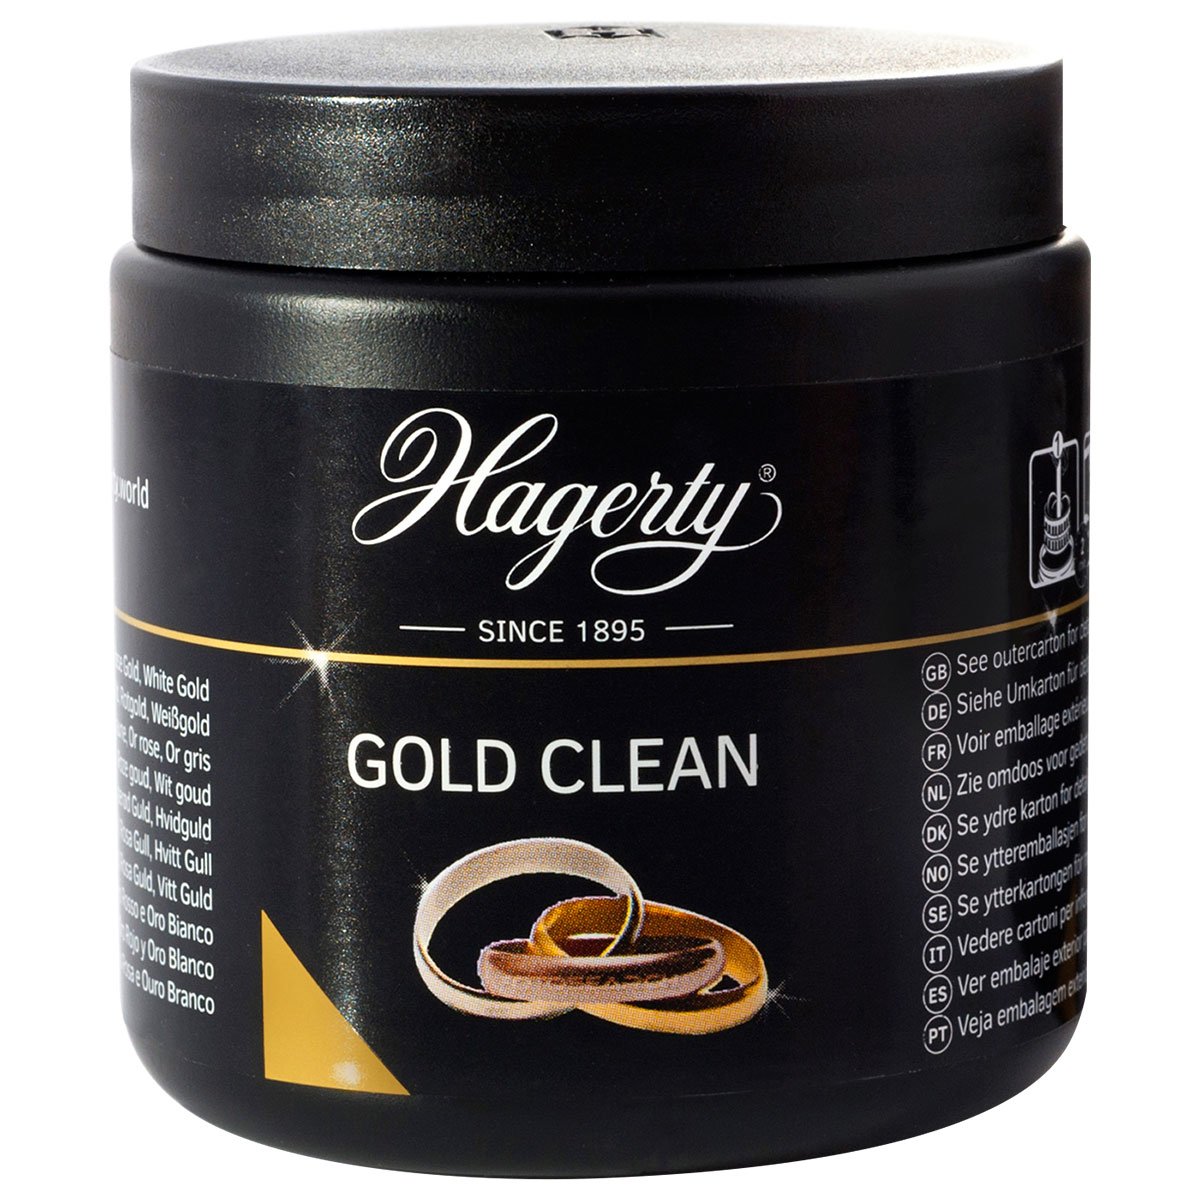 Hagerty Gold Clean, Tauchbad für Gold, 170 ml